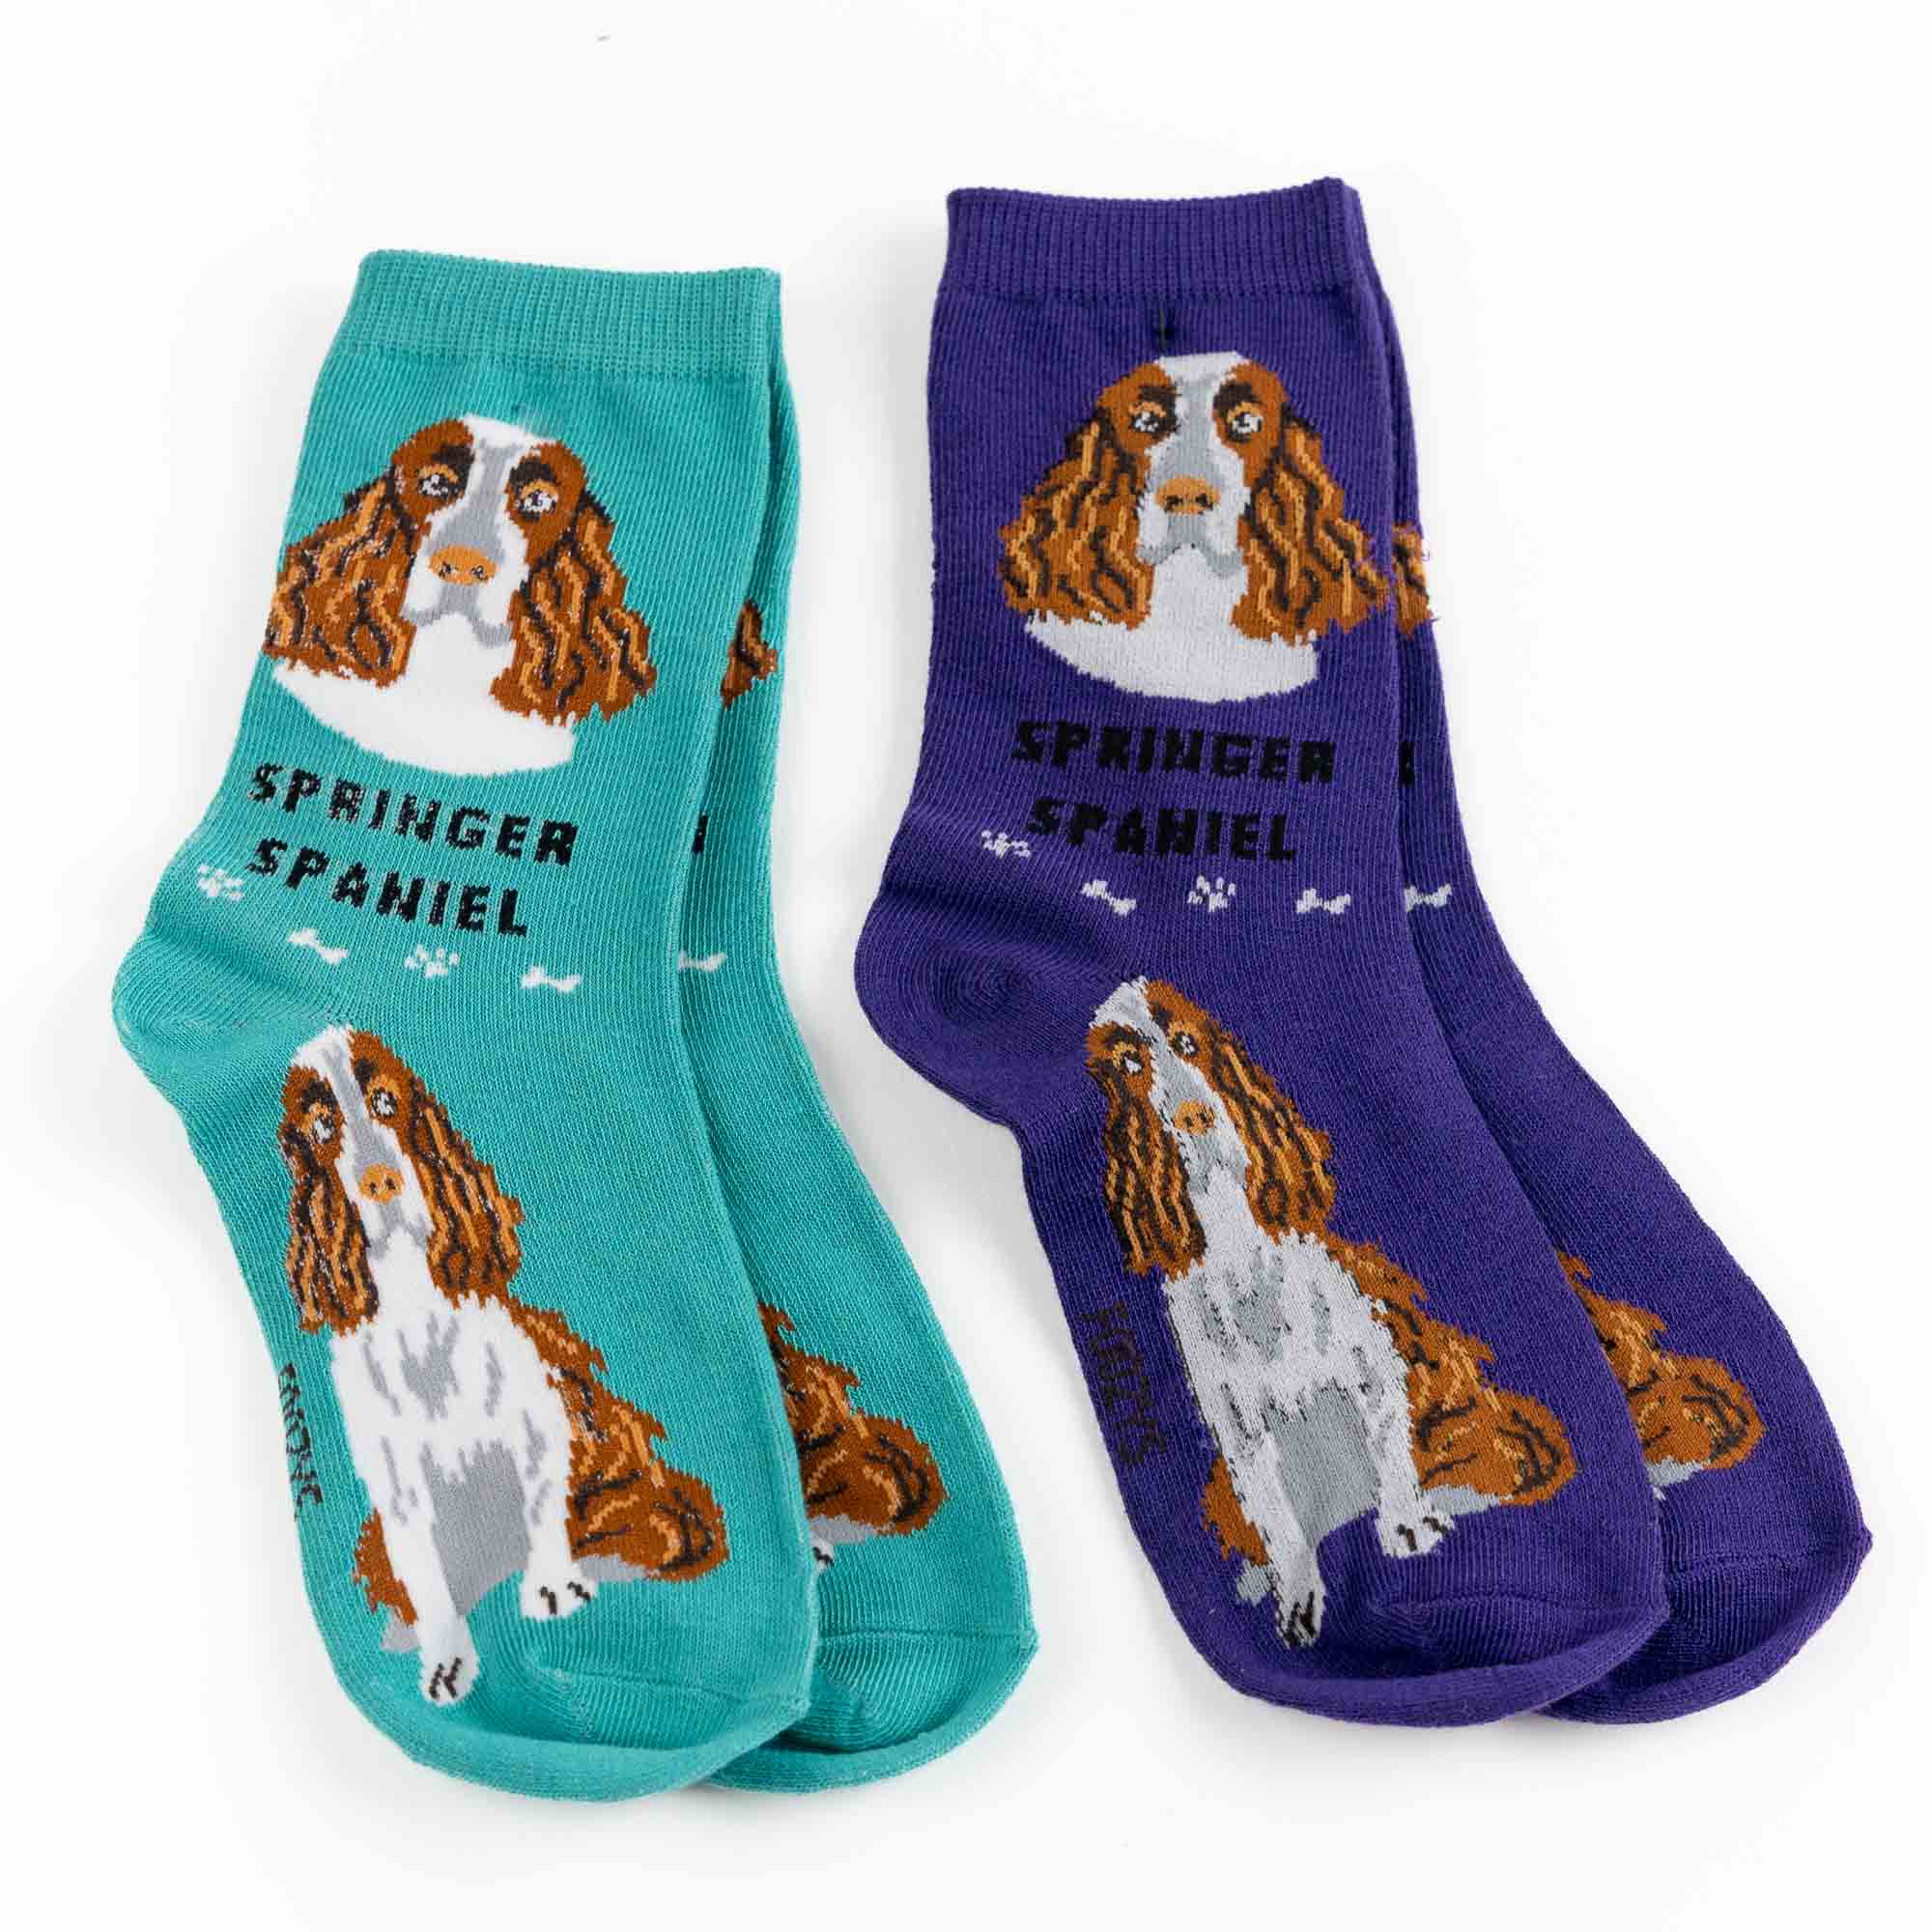 My Favorite Dog Breed Socks ❤️ Springer Spaniel Breed Dog Sock - 2 Set Collection